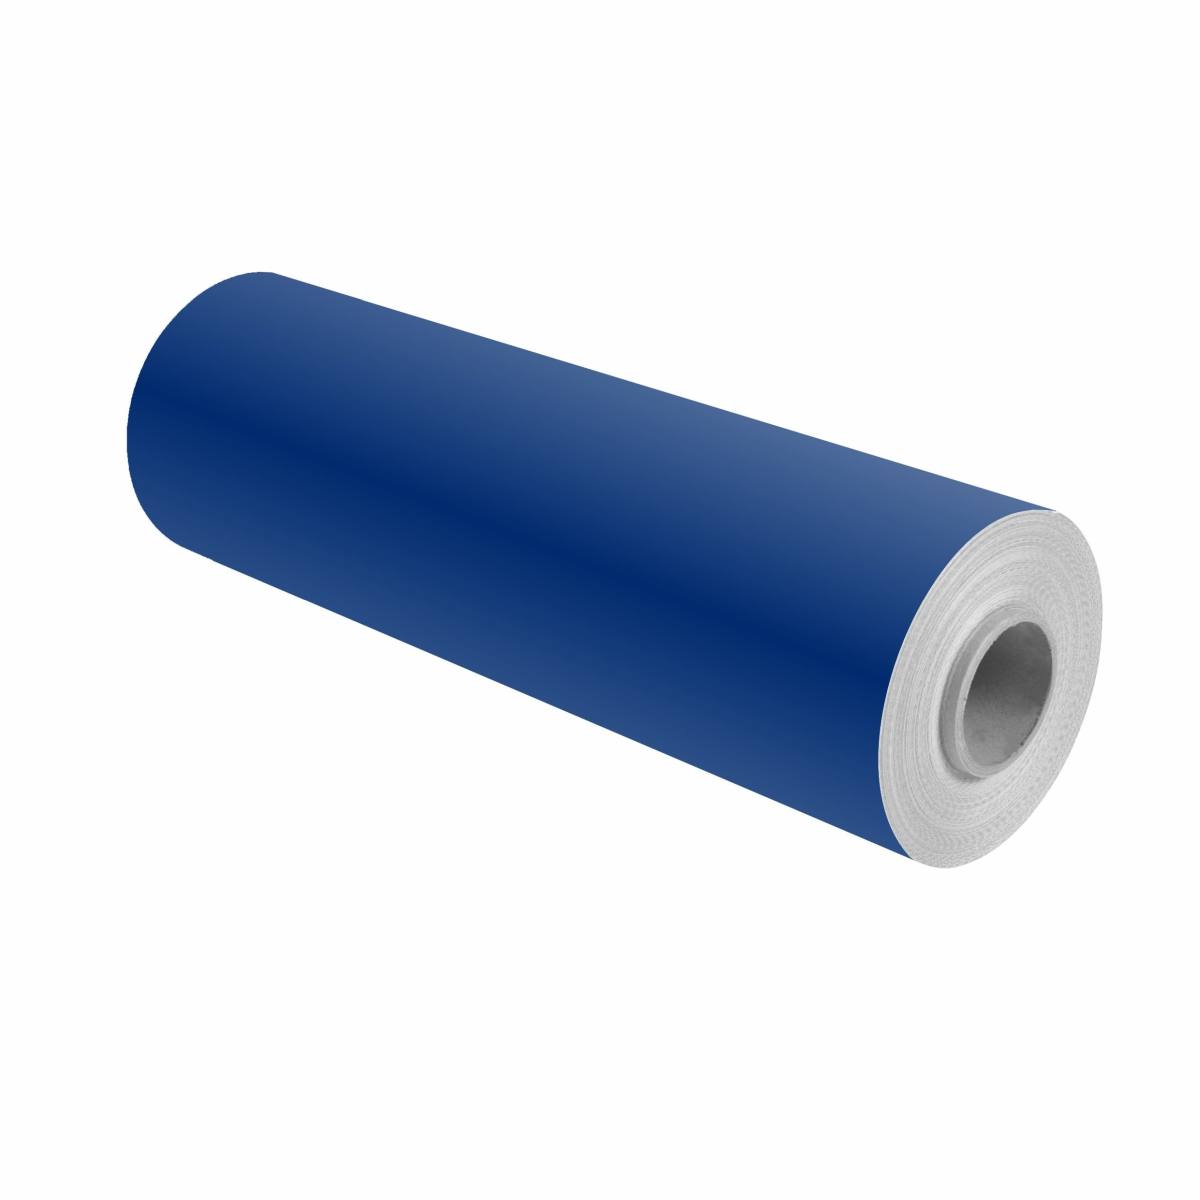 3M Scotchcal colour film 100-37 ultramarine blue 1.22m x 50m